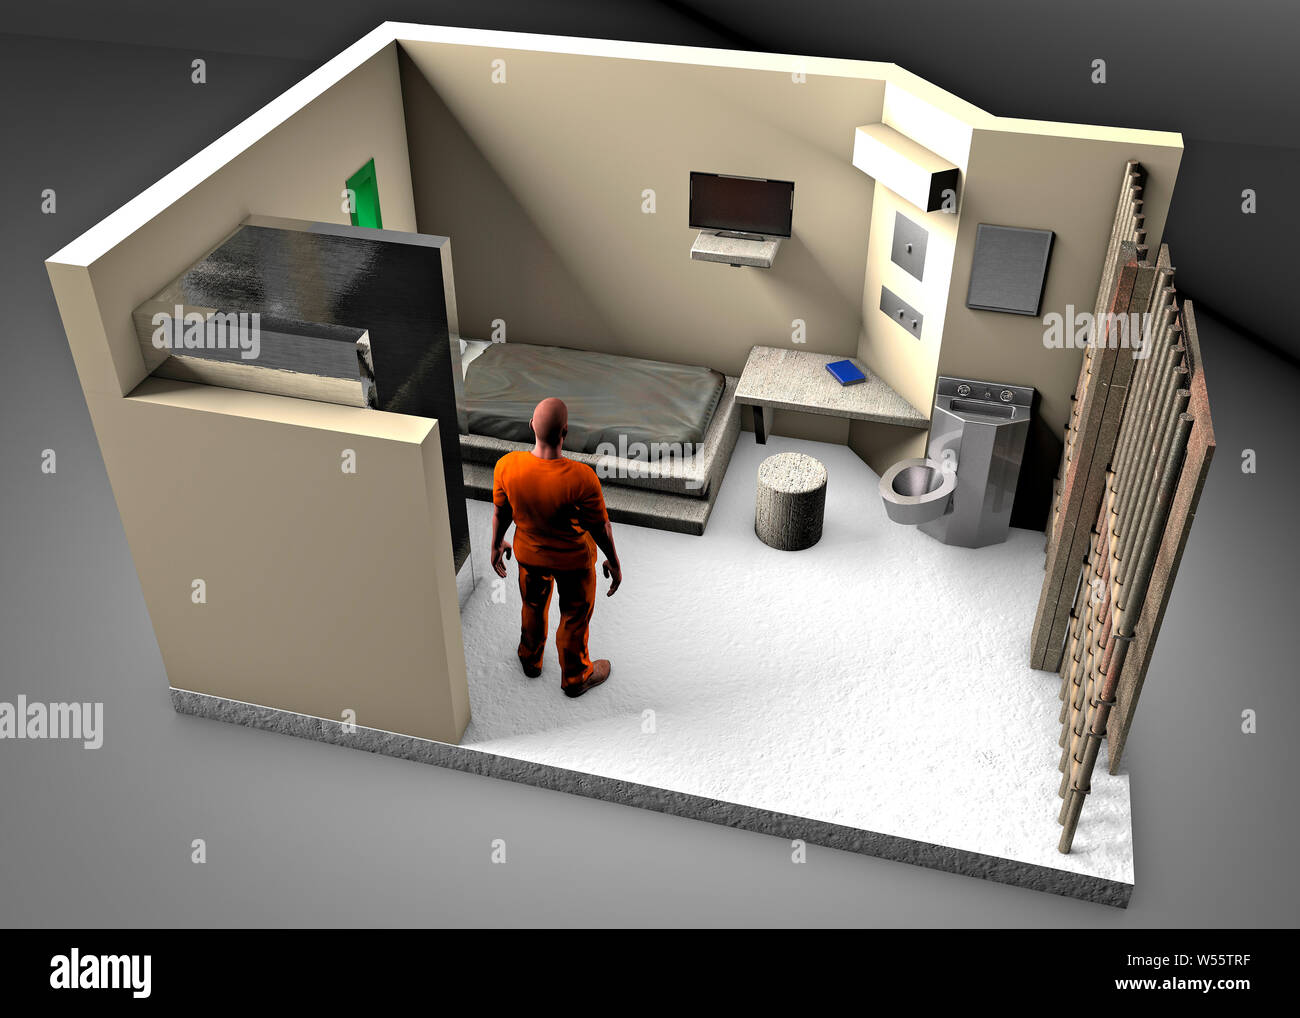 La reconstruction 3D d'une cellule de prison, l'ADX Florence Supermax, pénitencier du Colorado. Nous joindre centre pénitencier à sécurité maximum. Dans une cellule de prison Banque D'Images